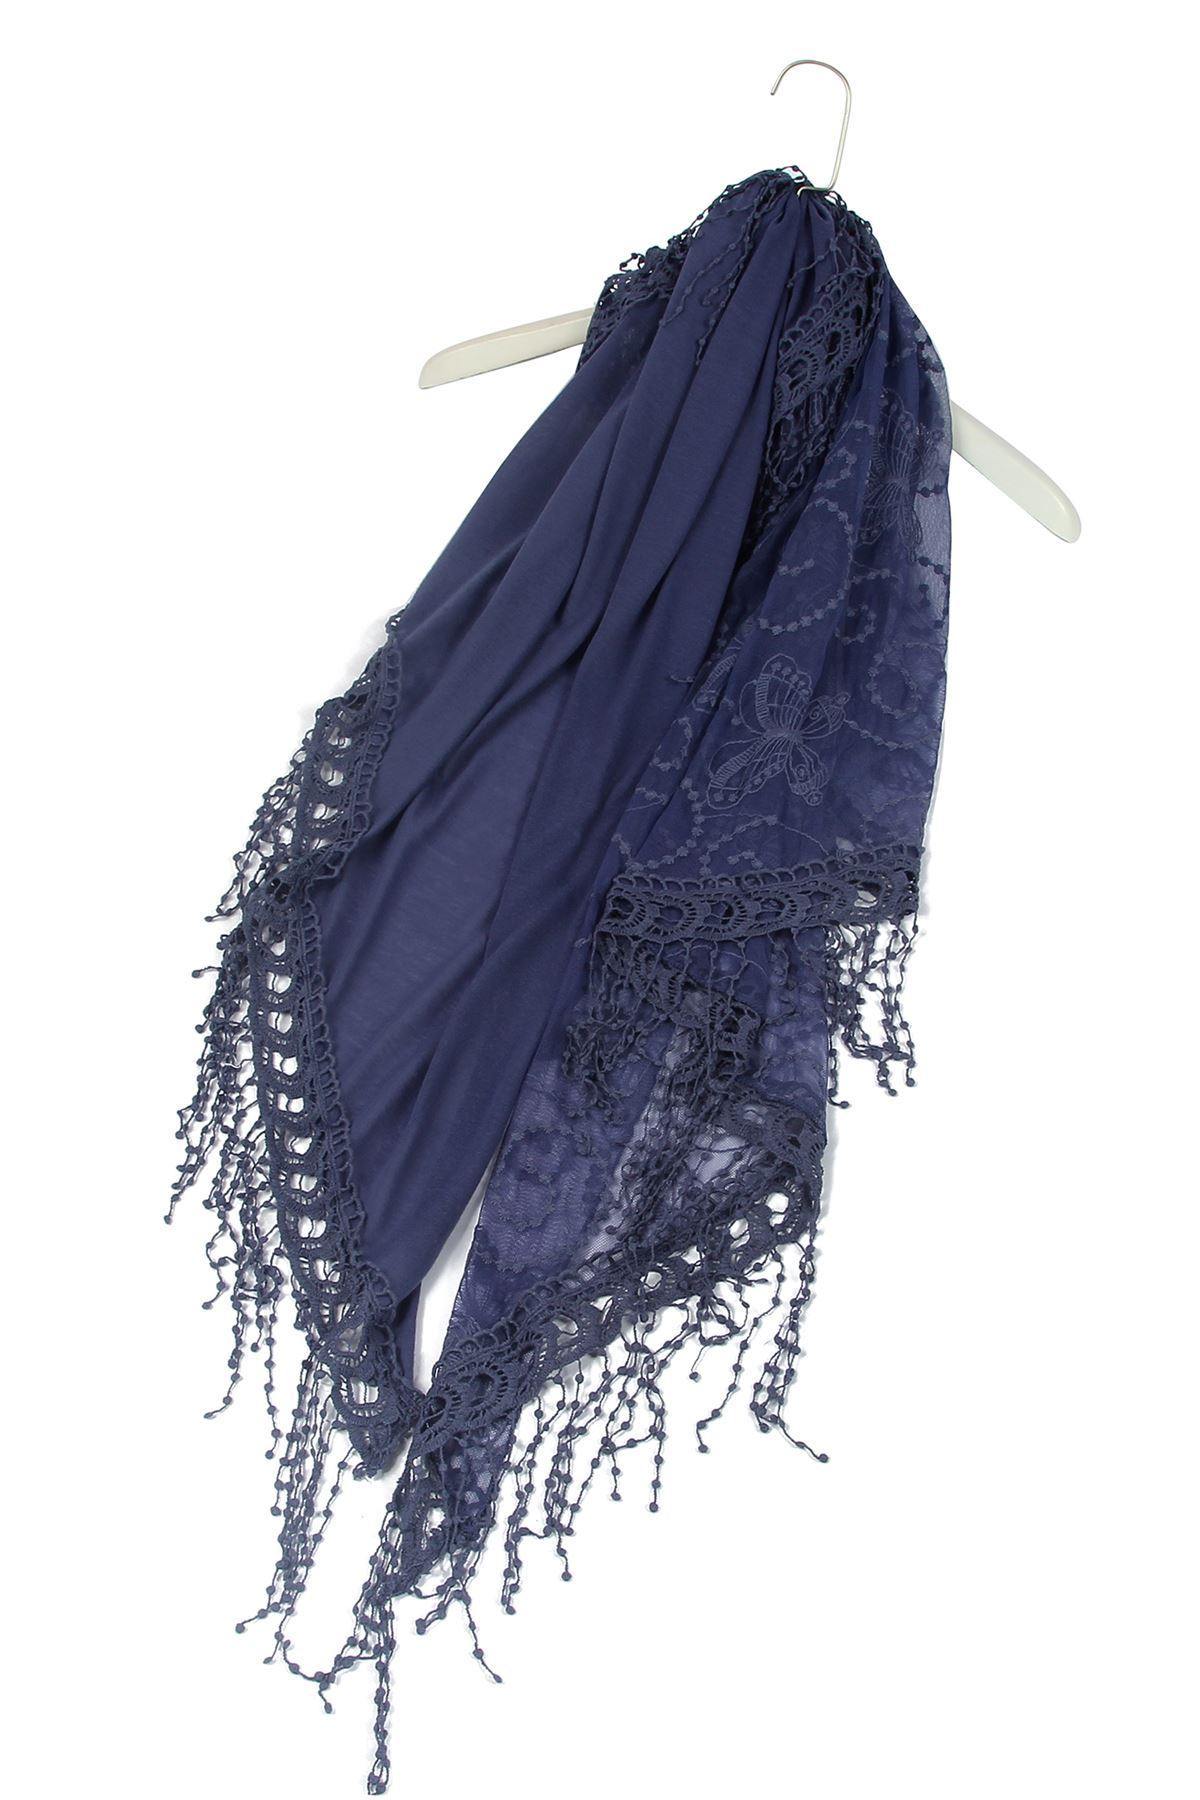 Bavlnený lichobežníkový šál-šatka, 80 cm x 198 cm x 70 cm, Motýlí a krajkový vzor, Džínsová - KlenotTV.sk